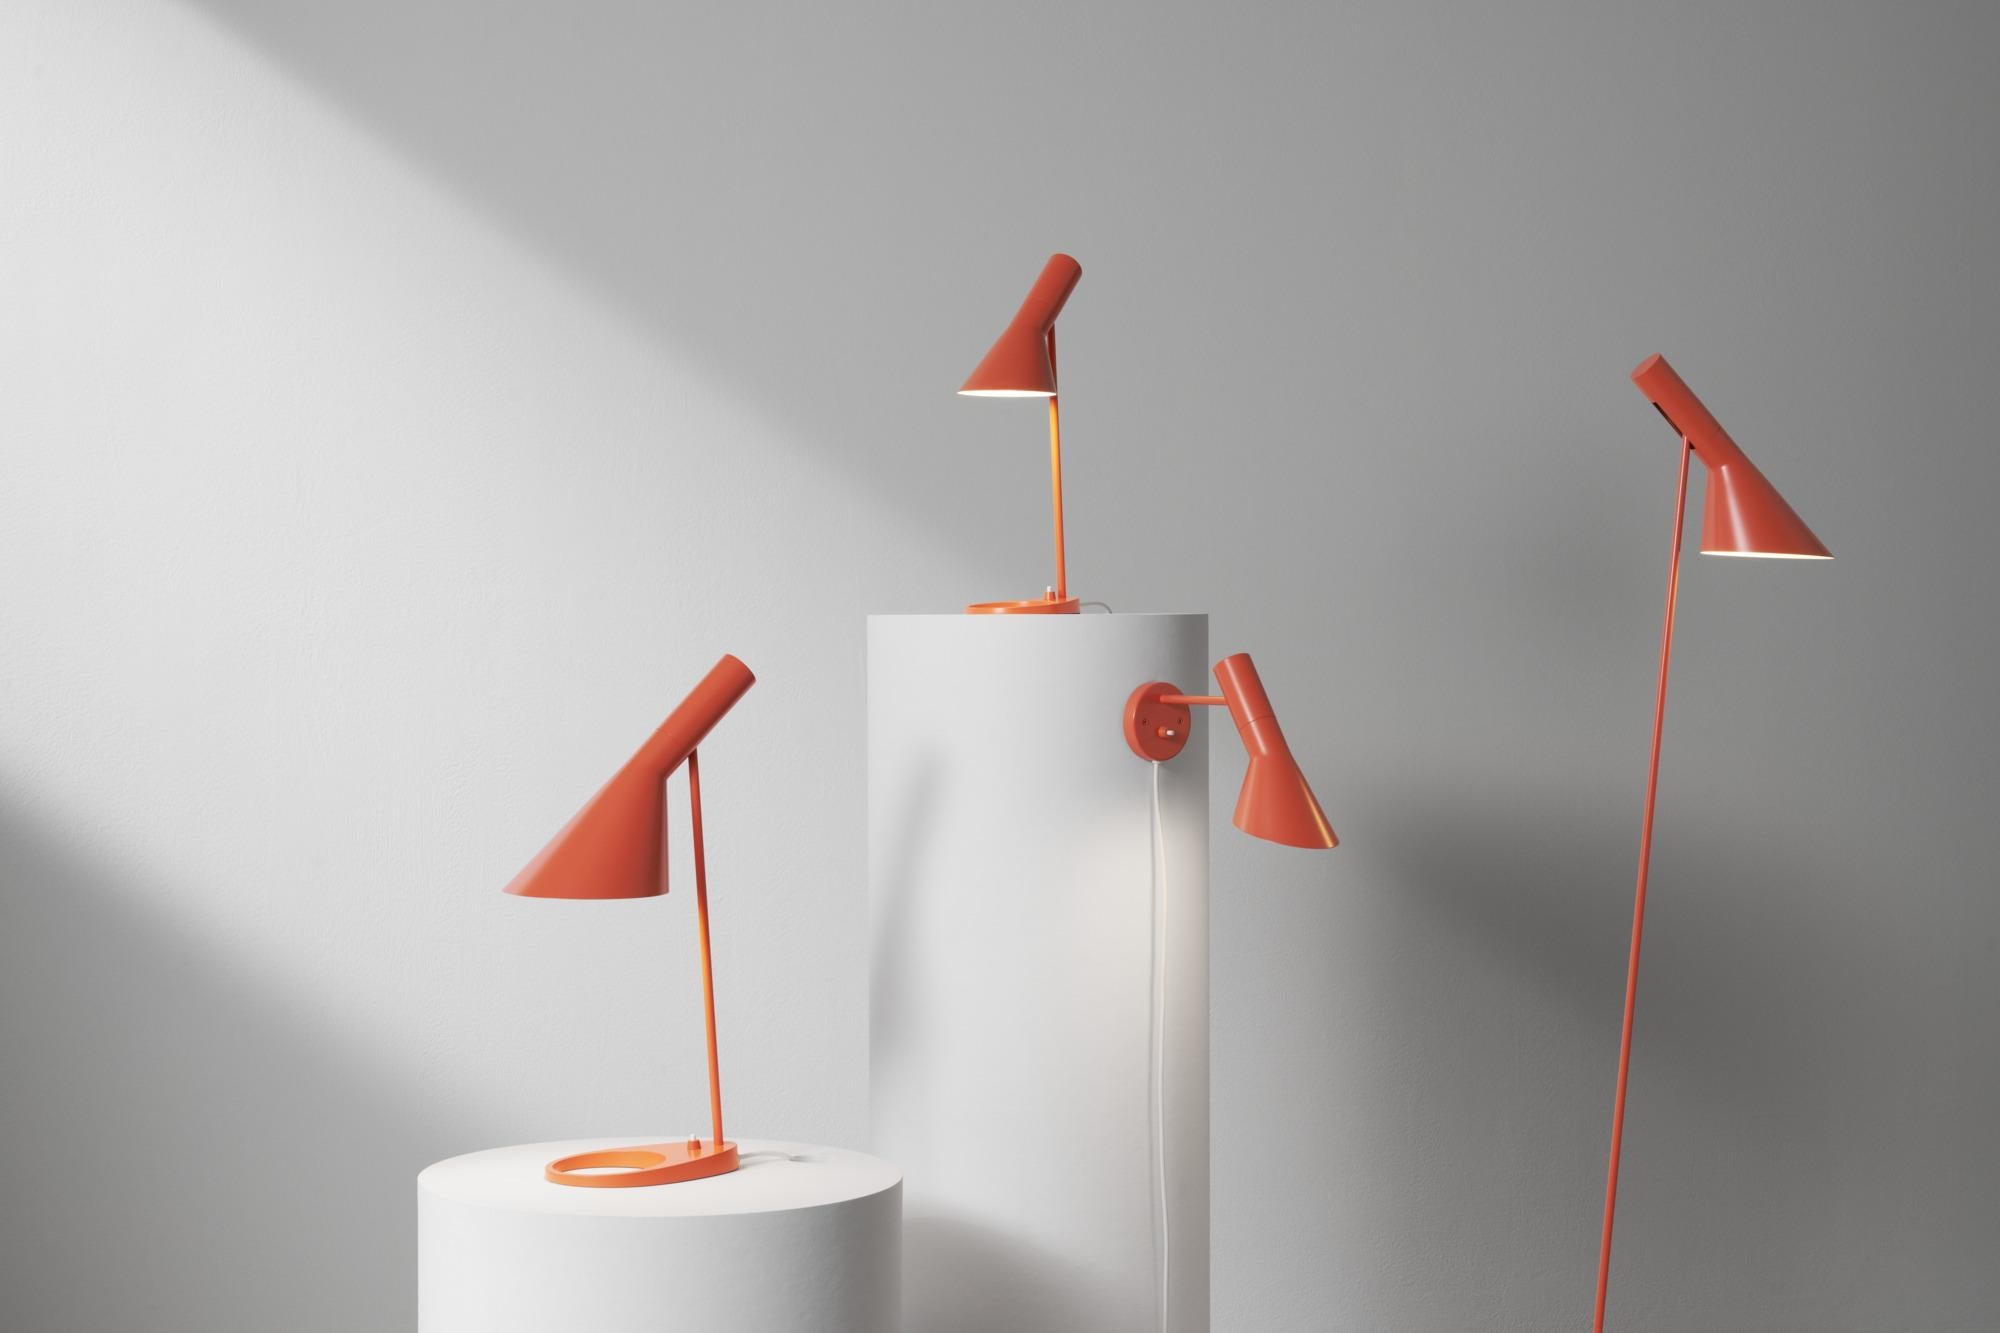 Lampadaire AJ de Arne Jacobsen en orange électrique pour Louis Poulsen.

La série AJ faisait partie de la collection de luminaires que le célèbre designer danois Arne Jacobsen a créée pour le premier hôtel SAS Royal en 1957. Aujourd'hui, ses designs